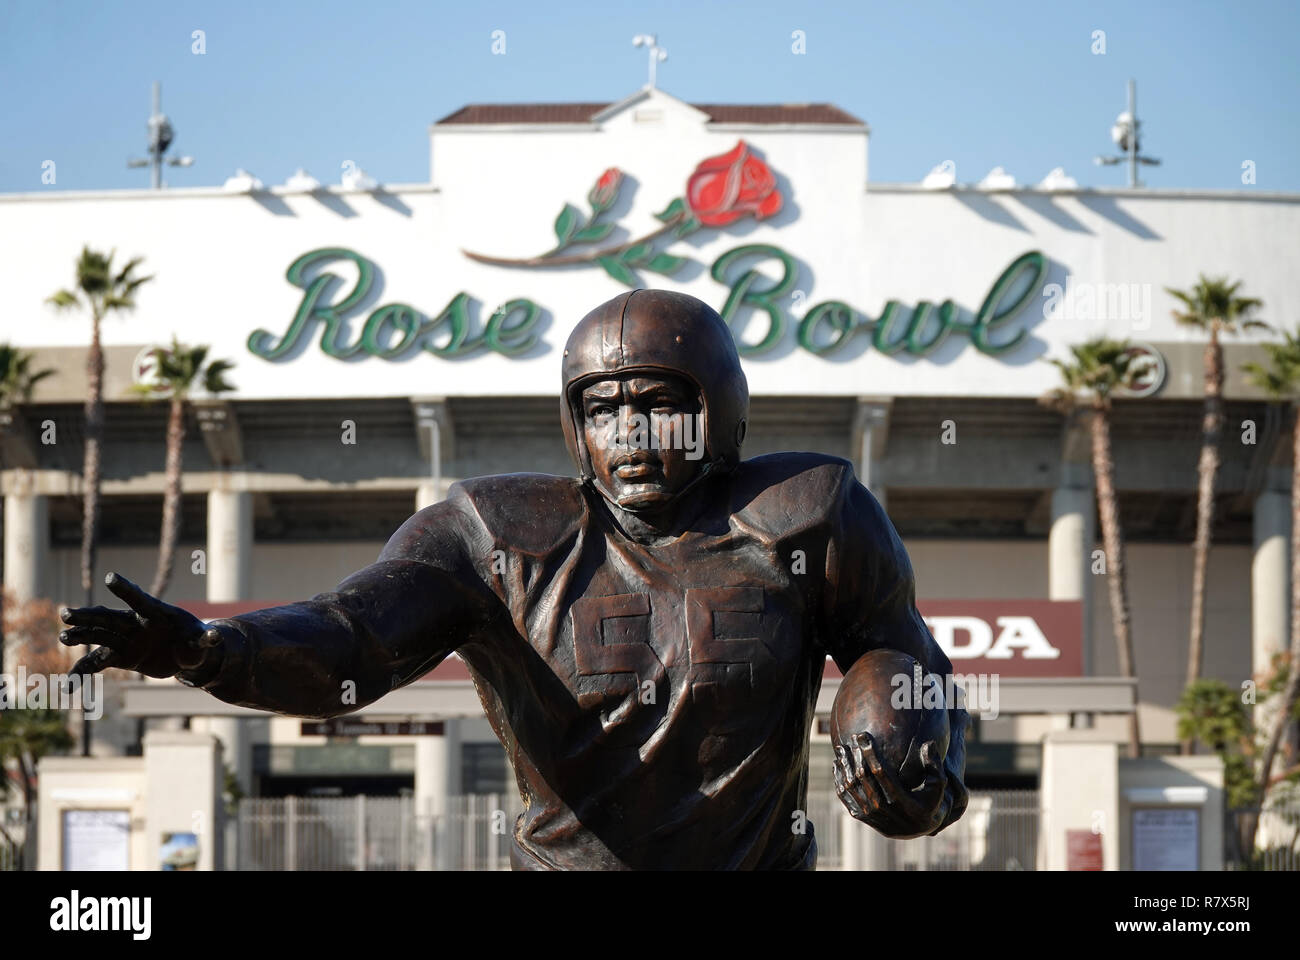 Pasadena, Californie / USA - 17 Février 2018 : une statue de la barrière de couleur de l'athlète de rupture, Jackie Robinson, est illustré à l'extérieur de l'historique Rose Bowl Stadium. Banque D'Images